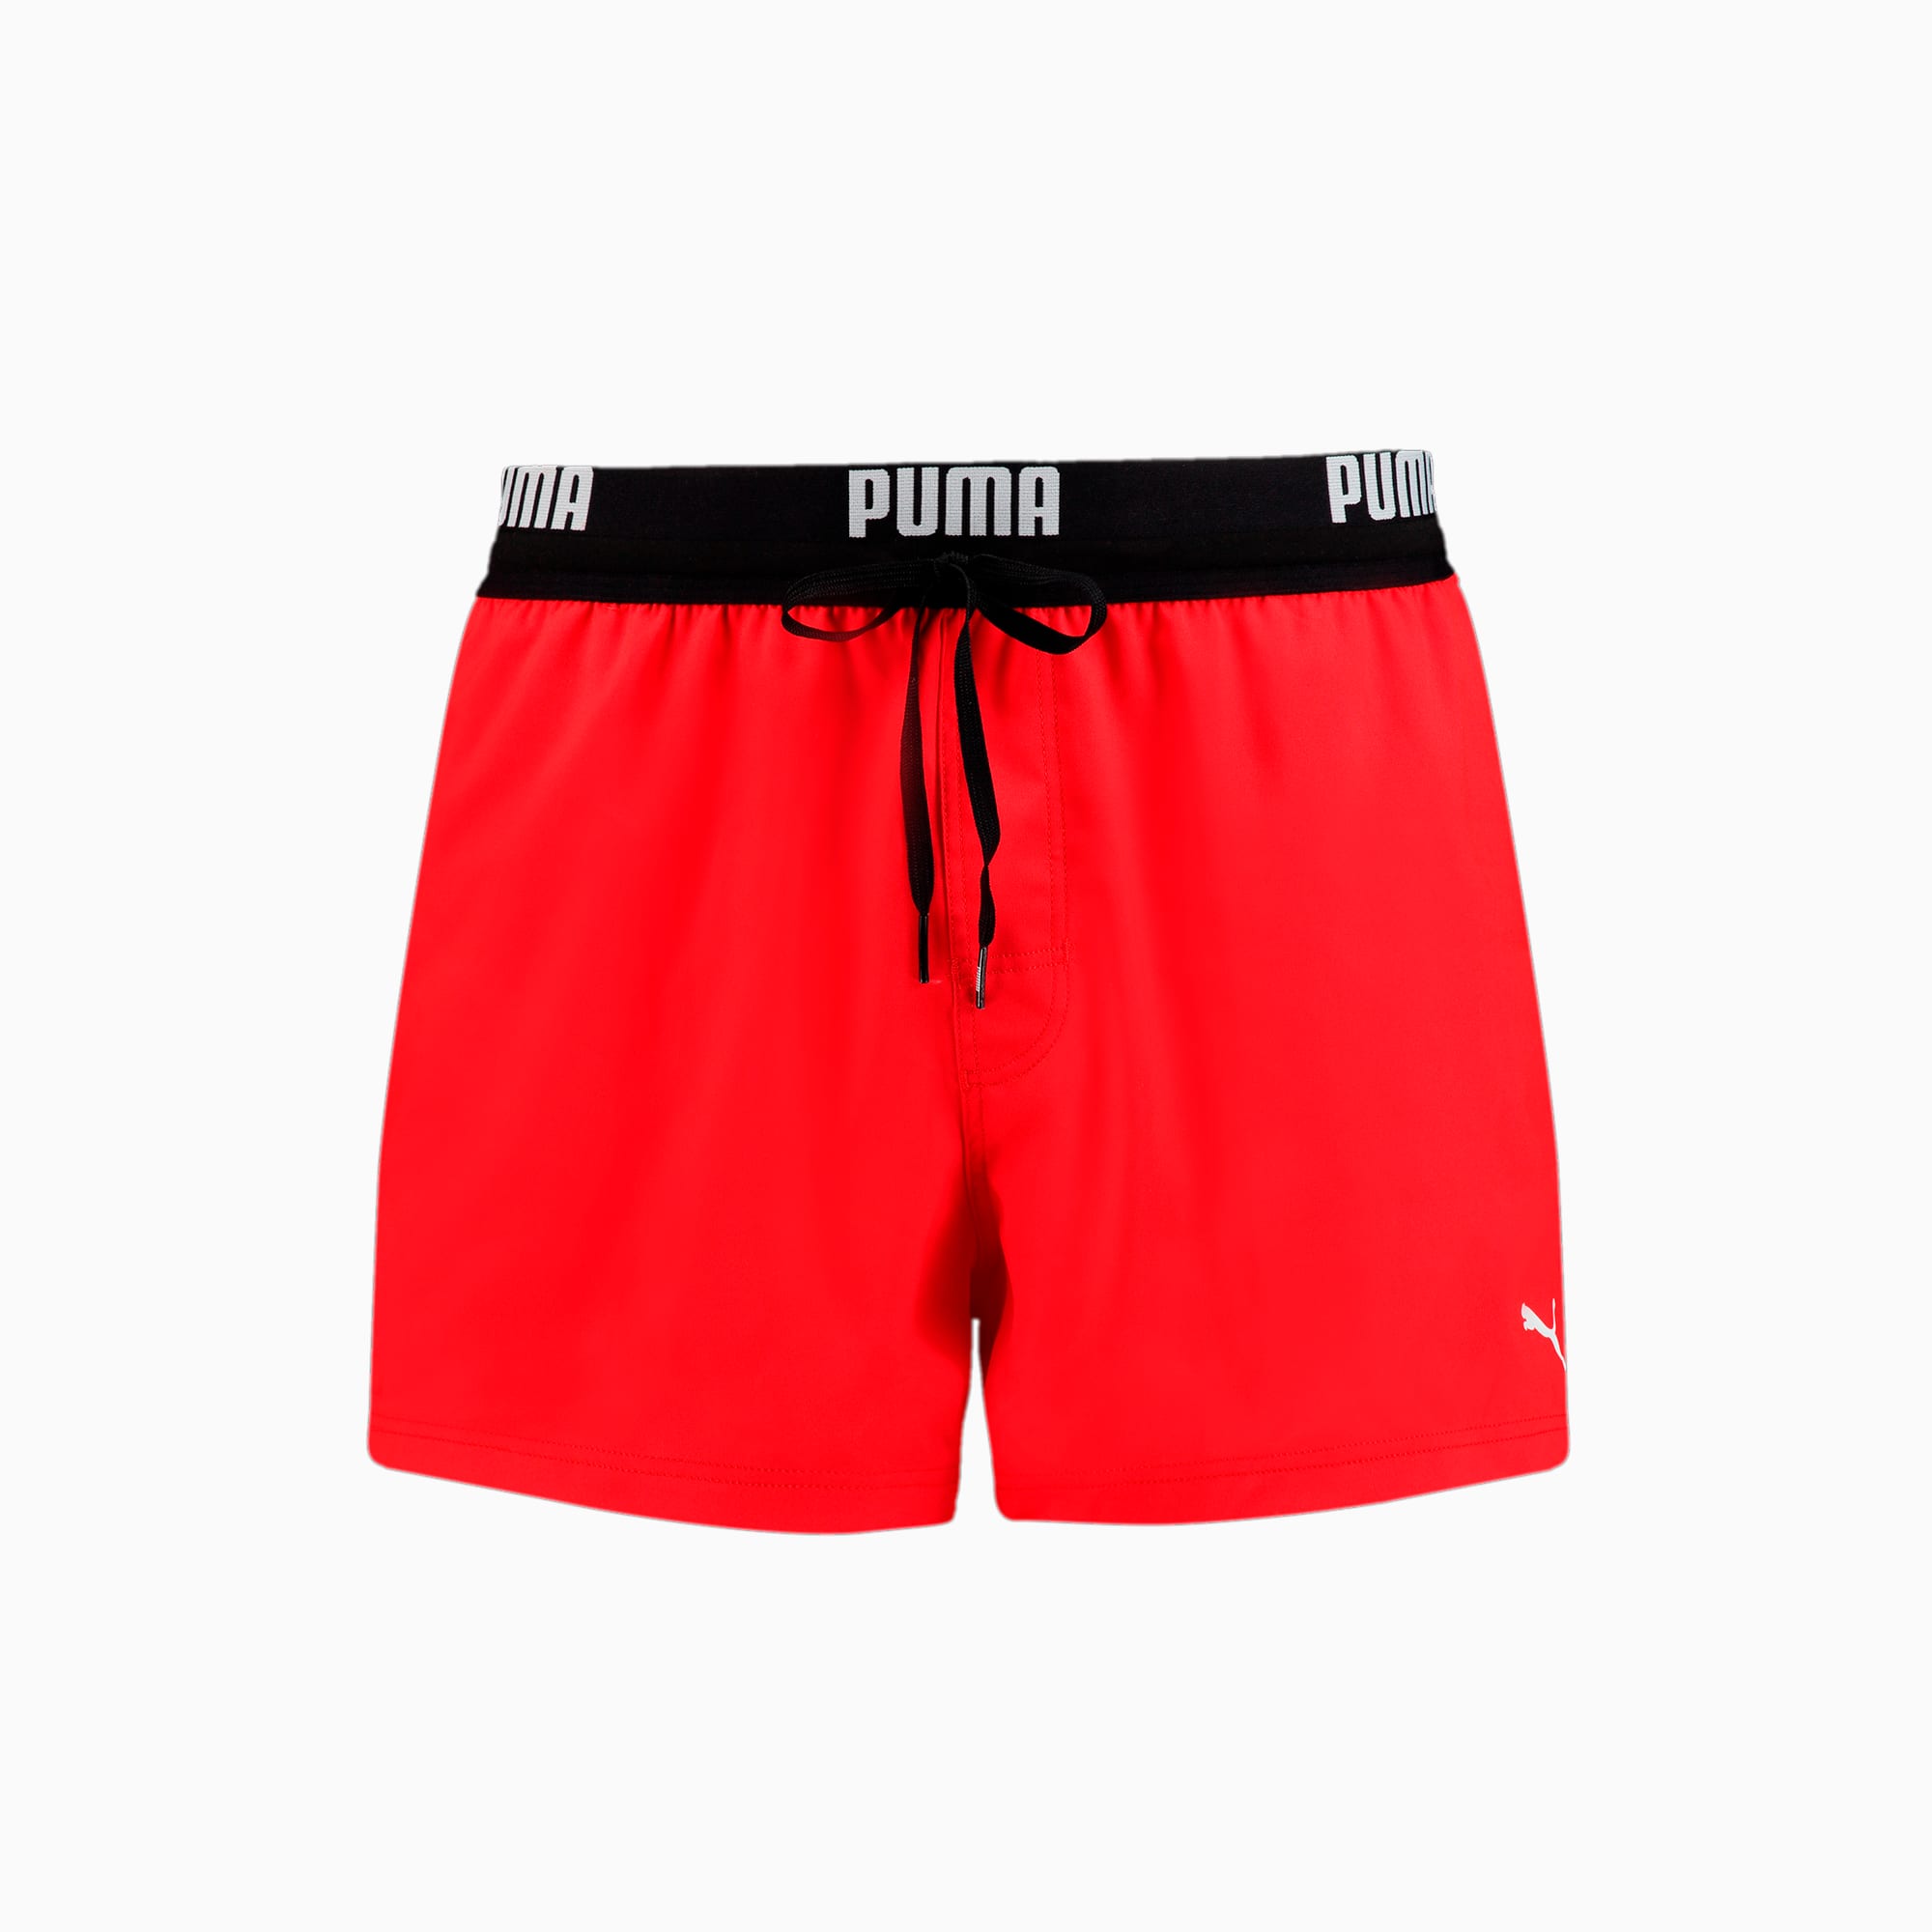 puma short shorts